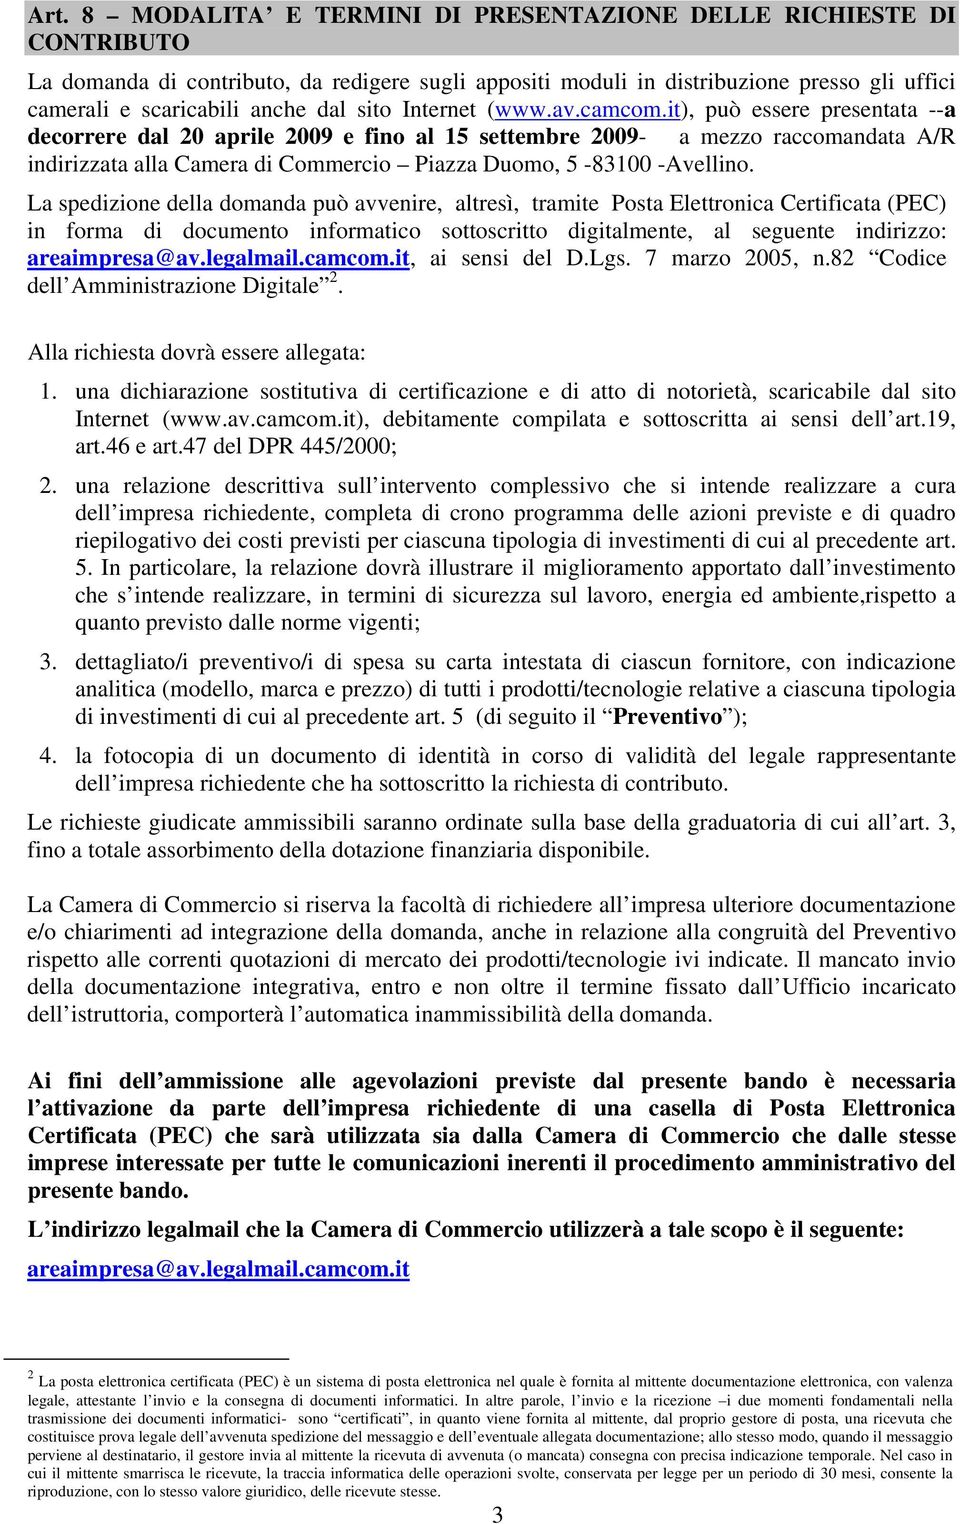 it), può essere presentata --a decorrere dal 20 aprile 2009 e fino al 15 settembre 2009- a mezzo raccomandata A/R indirizzata alla Camera di Commercio Piazza Duomo, 5-83100 -Avellino.